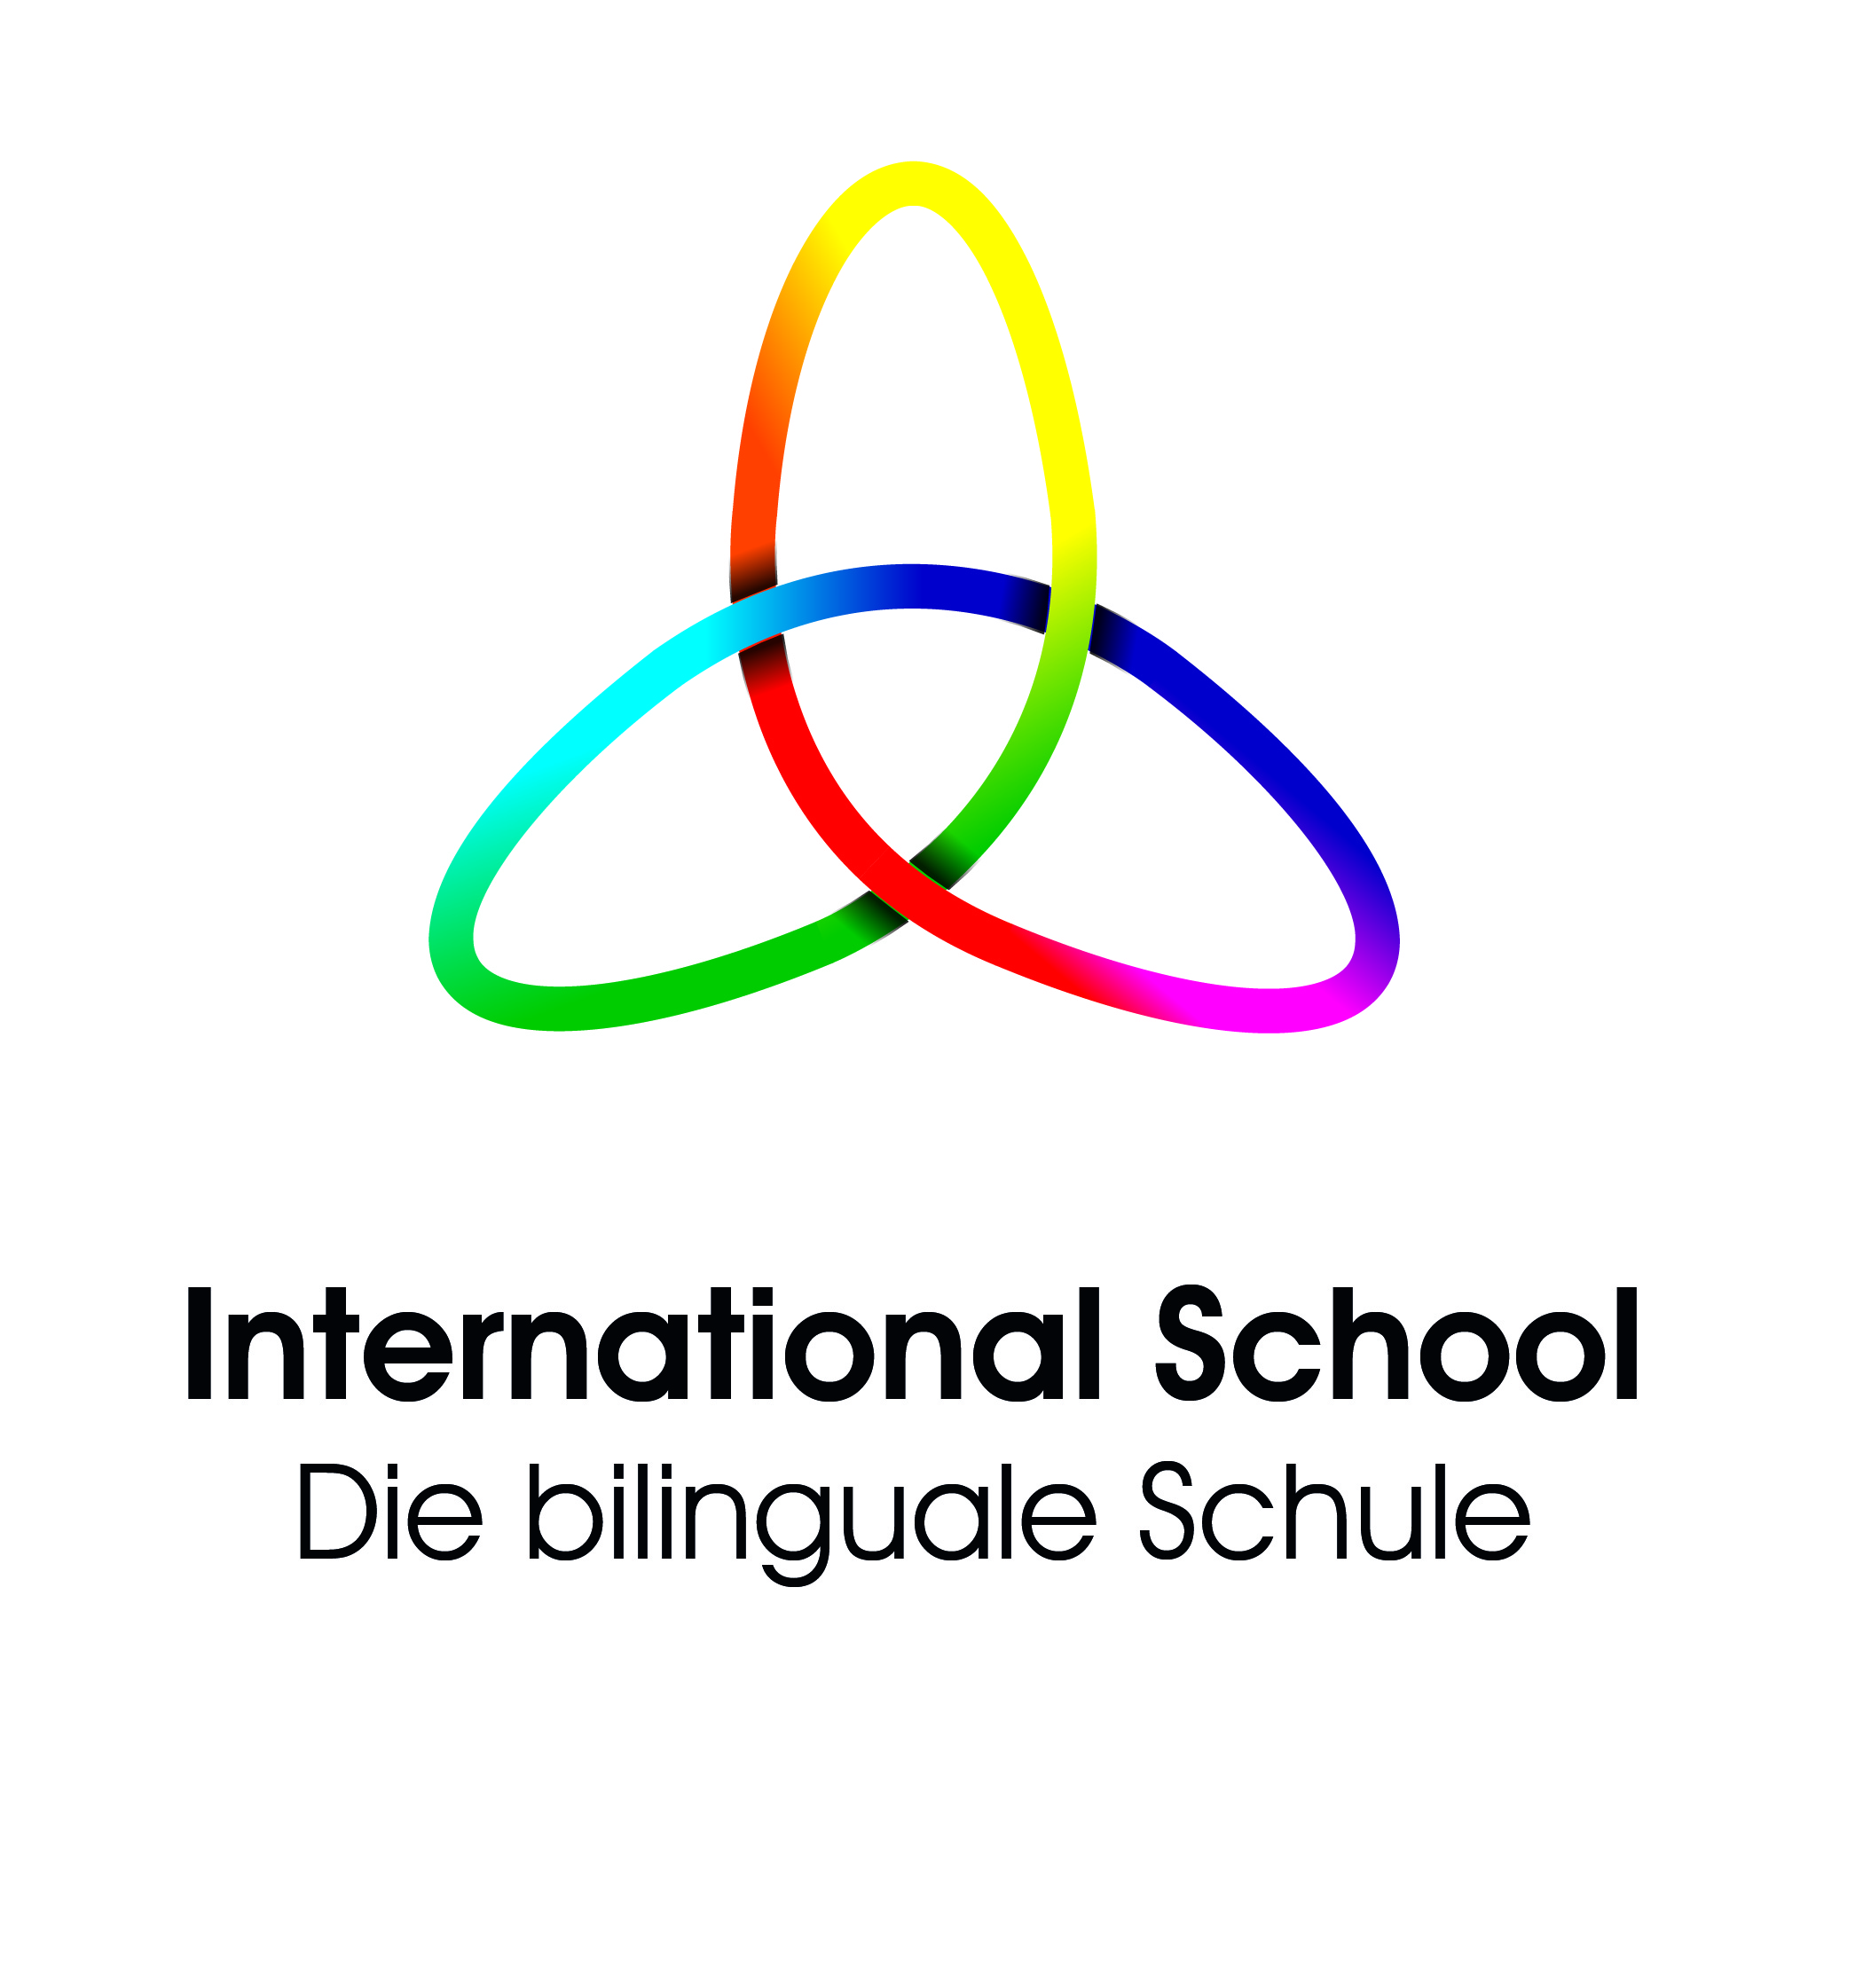 Bild 1 Act smart - get WISE: World International School Europe gGmbH in Eisenach